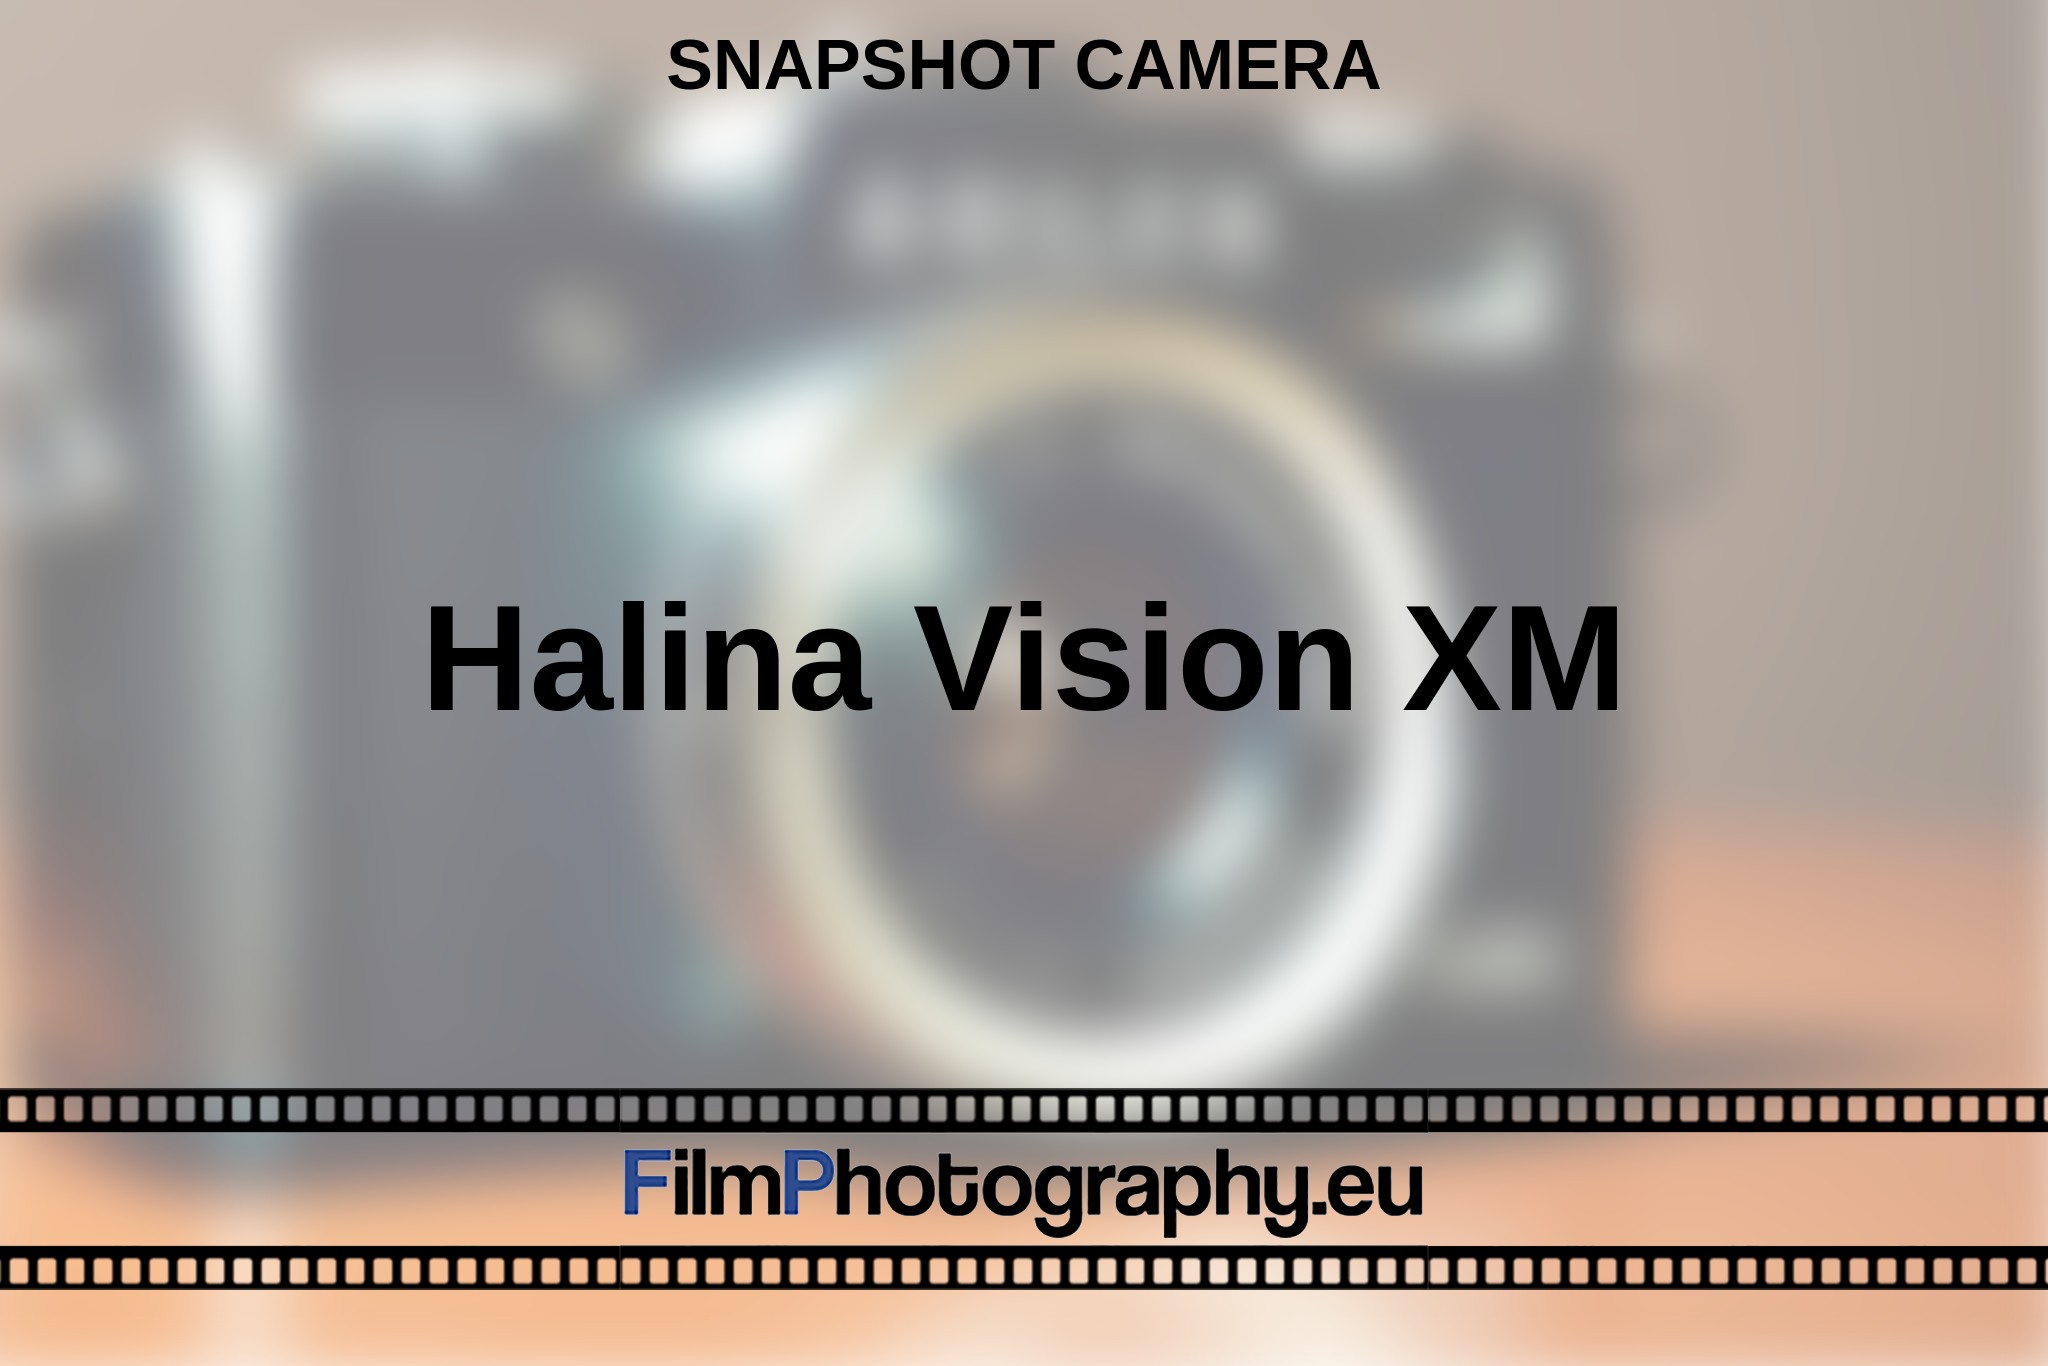 halina-vision-xm-snapshot-camera-en-bnv.jpg